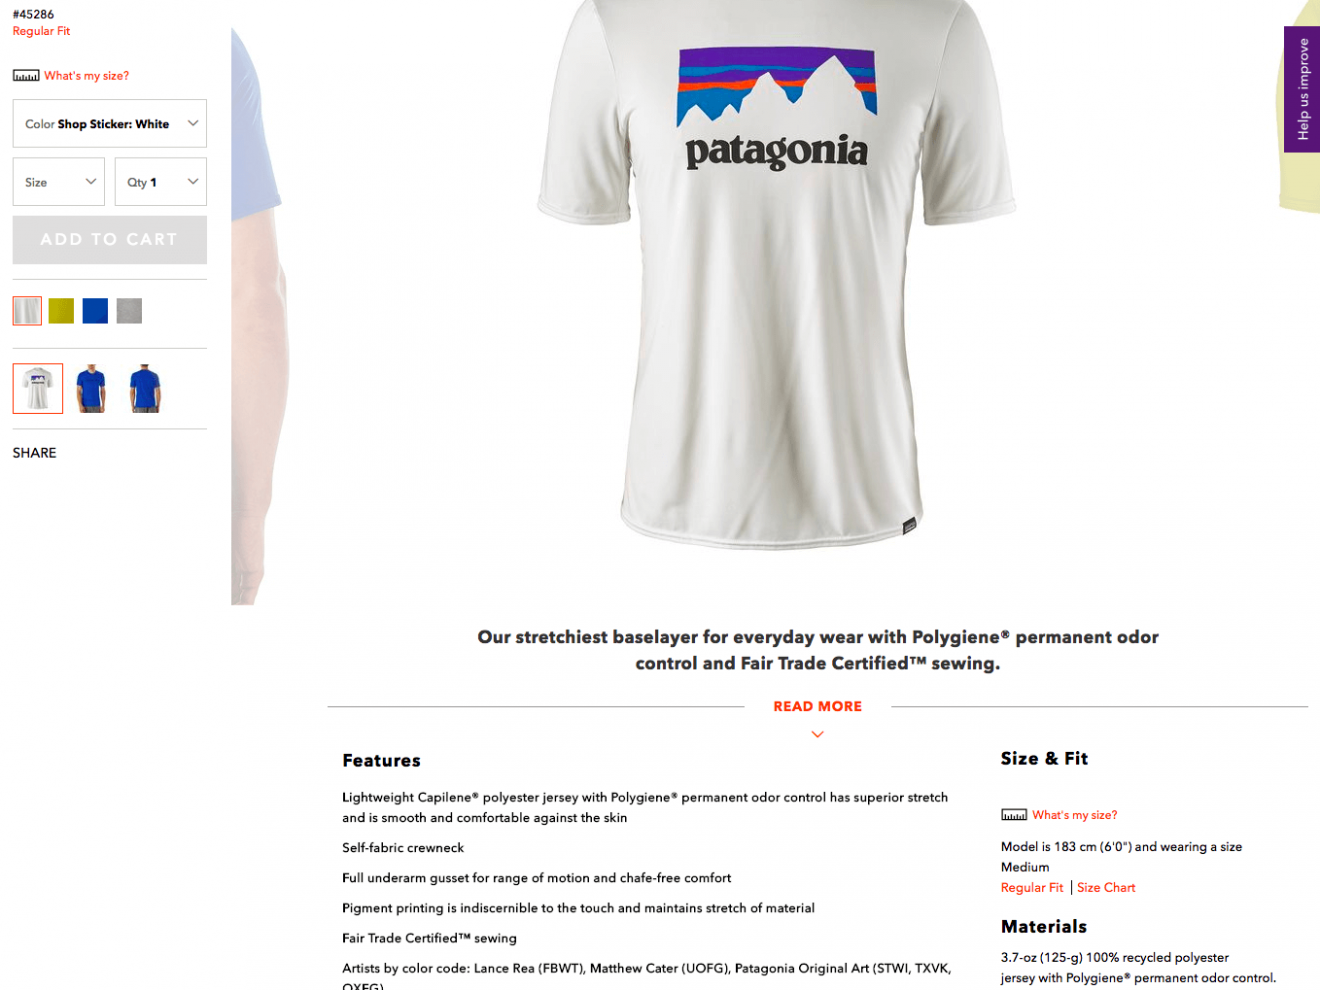 Patagonia T-Shirt customisation